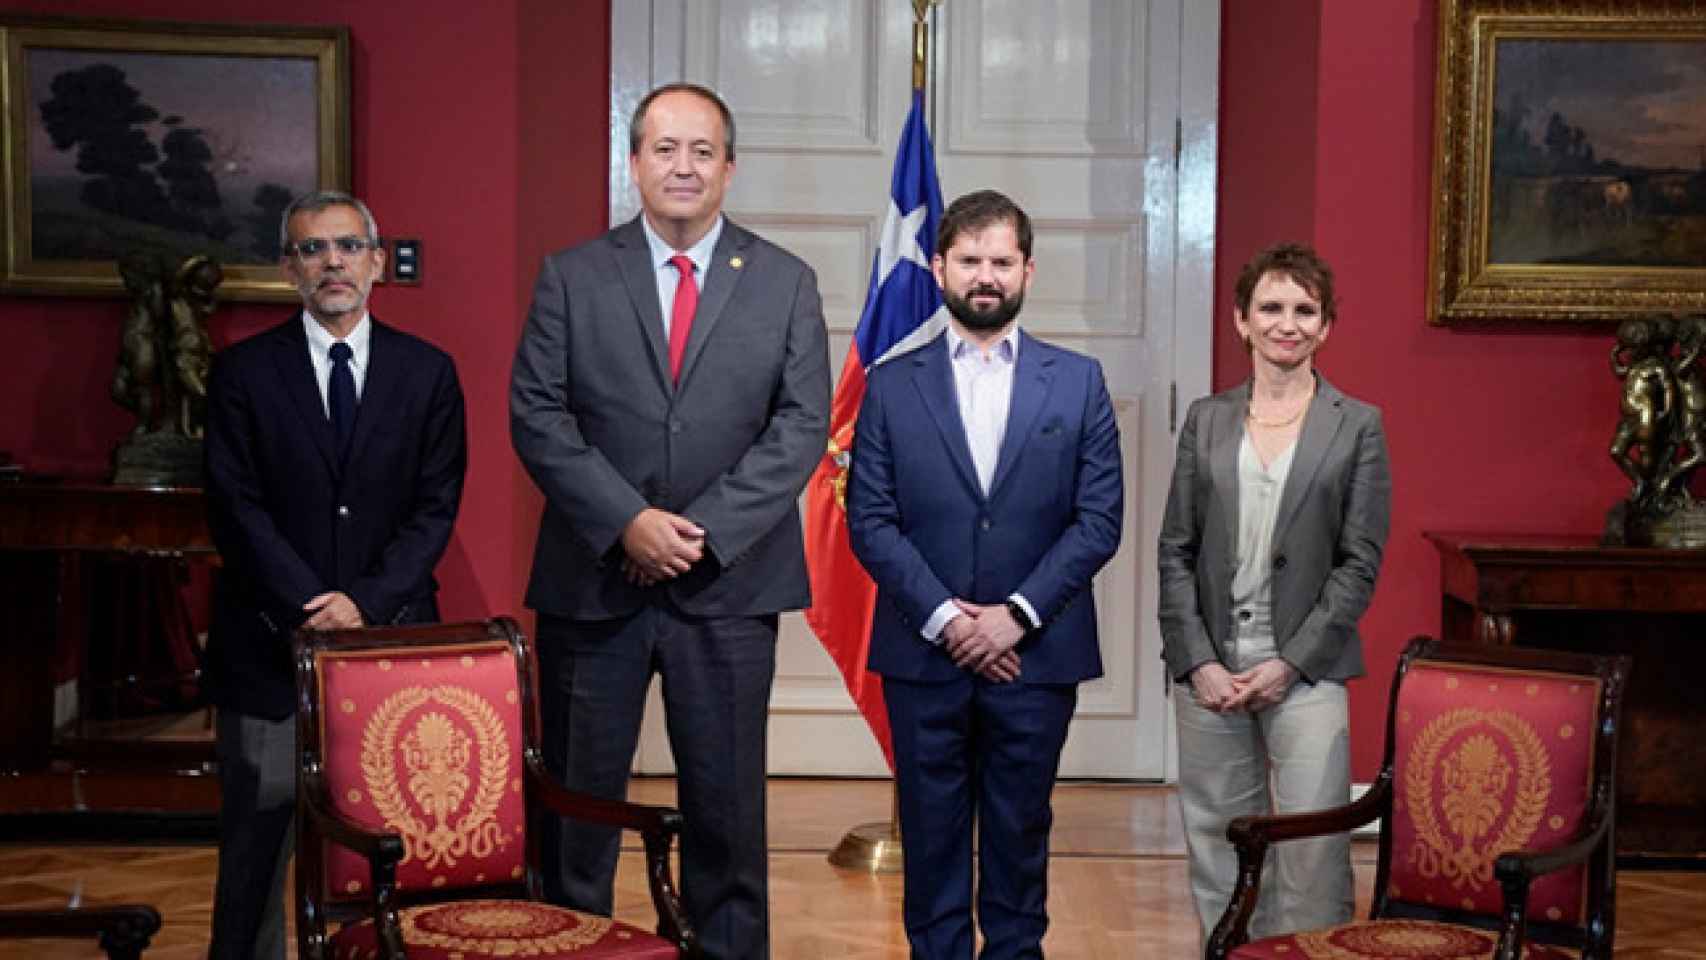 E presidente de la República, Gabriel Boric, a recibido de manera oficial al nuevo fiscal hace unos días en el Palacio de la Moneda, sede de la presidencia